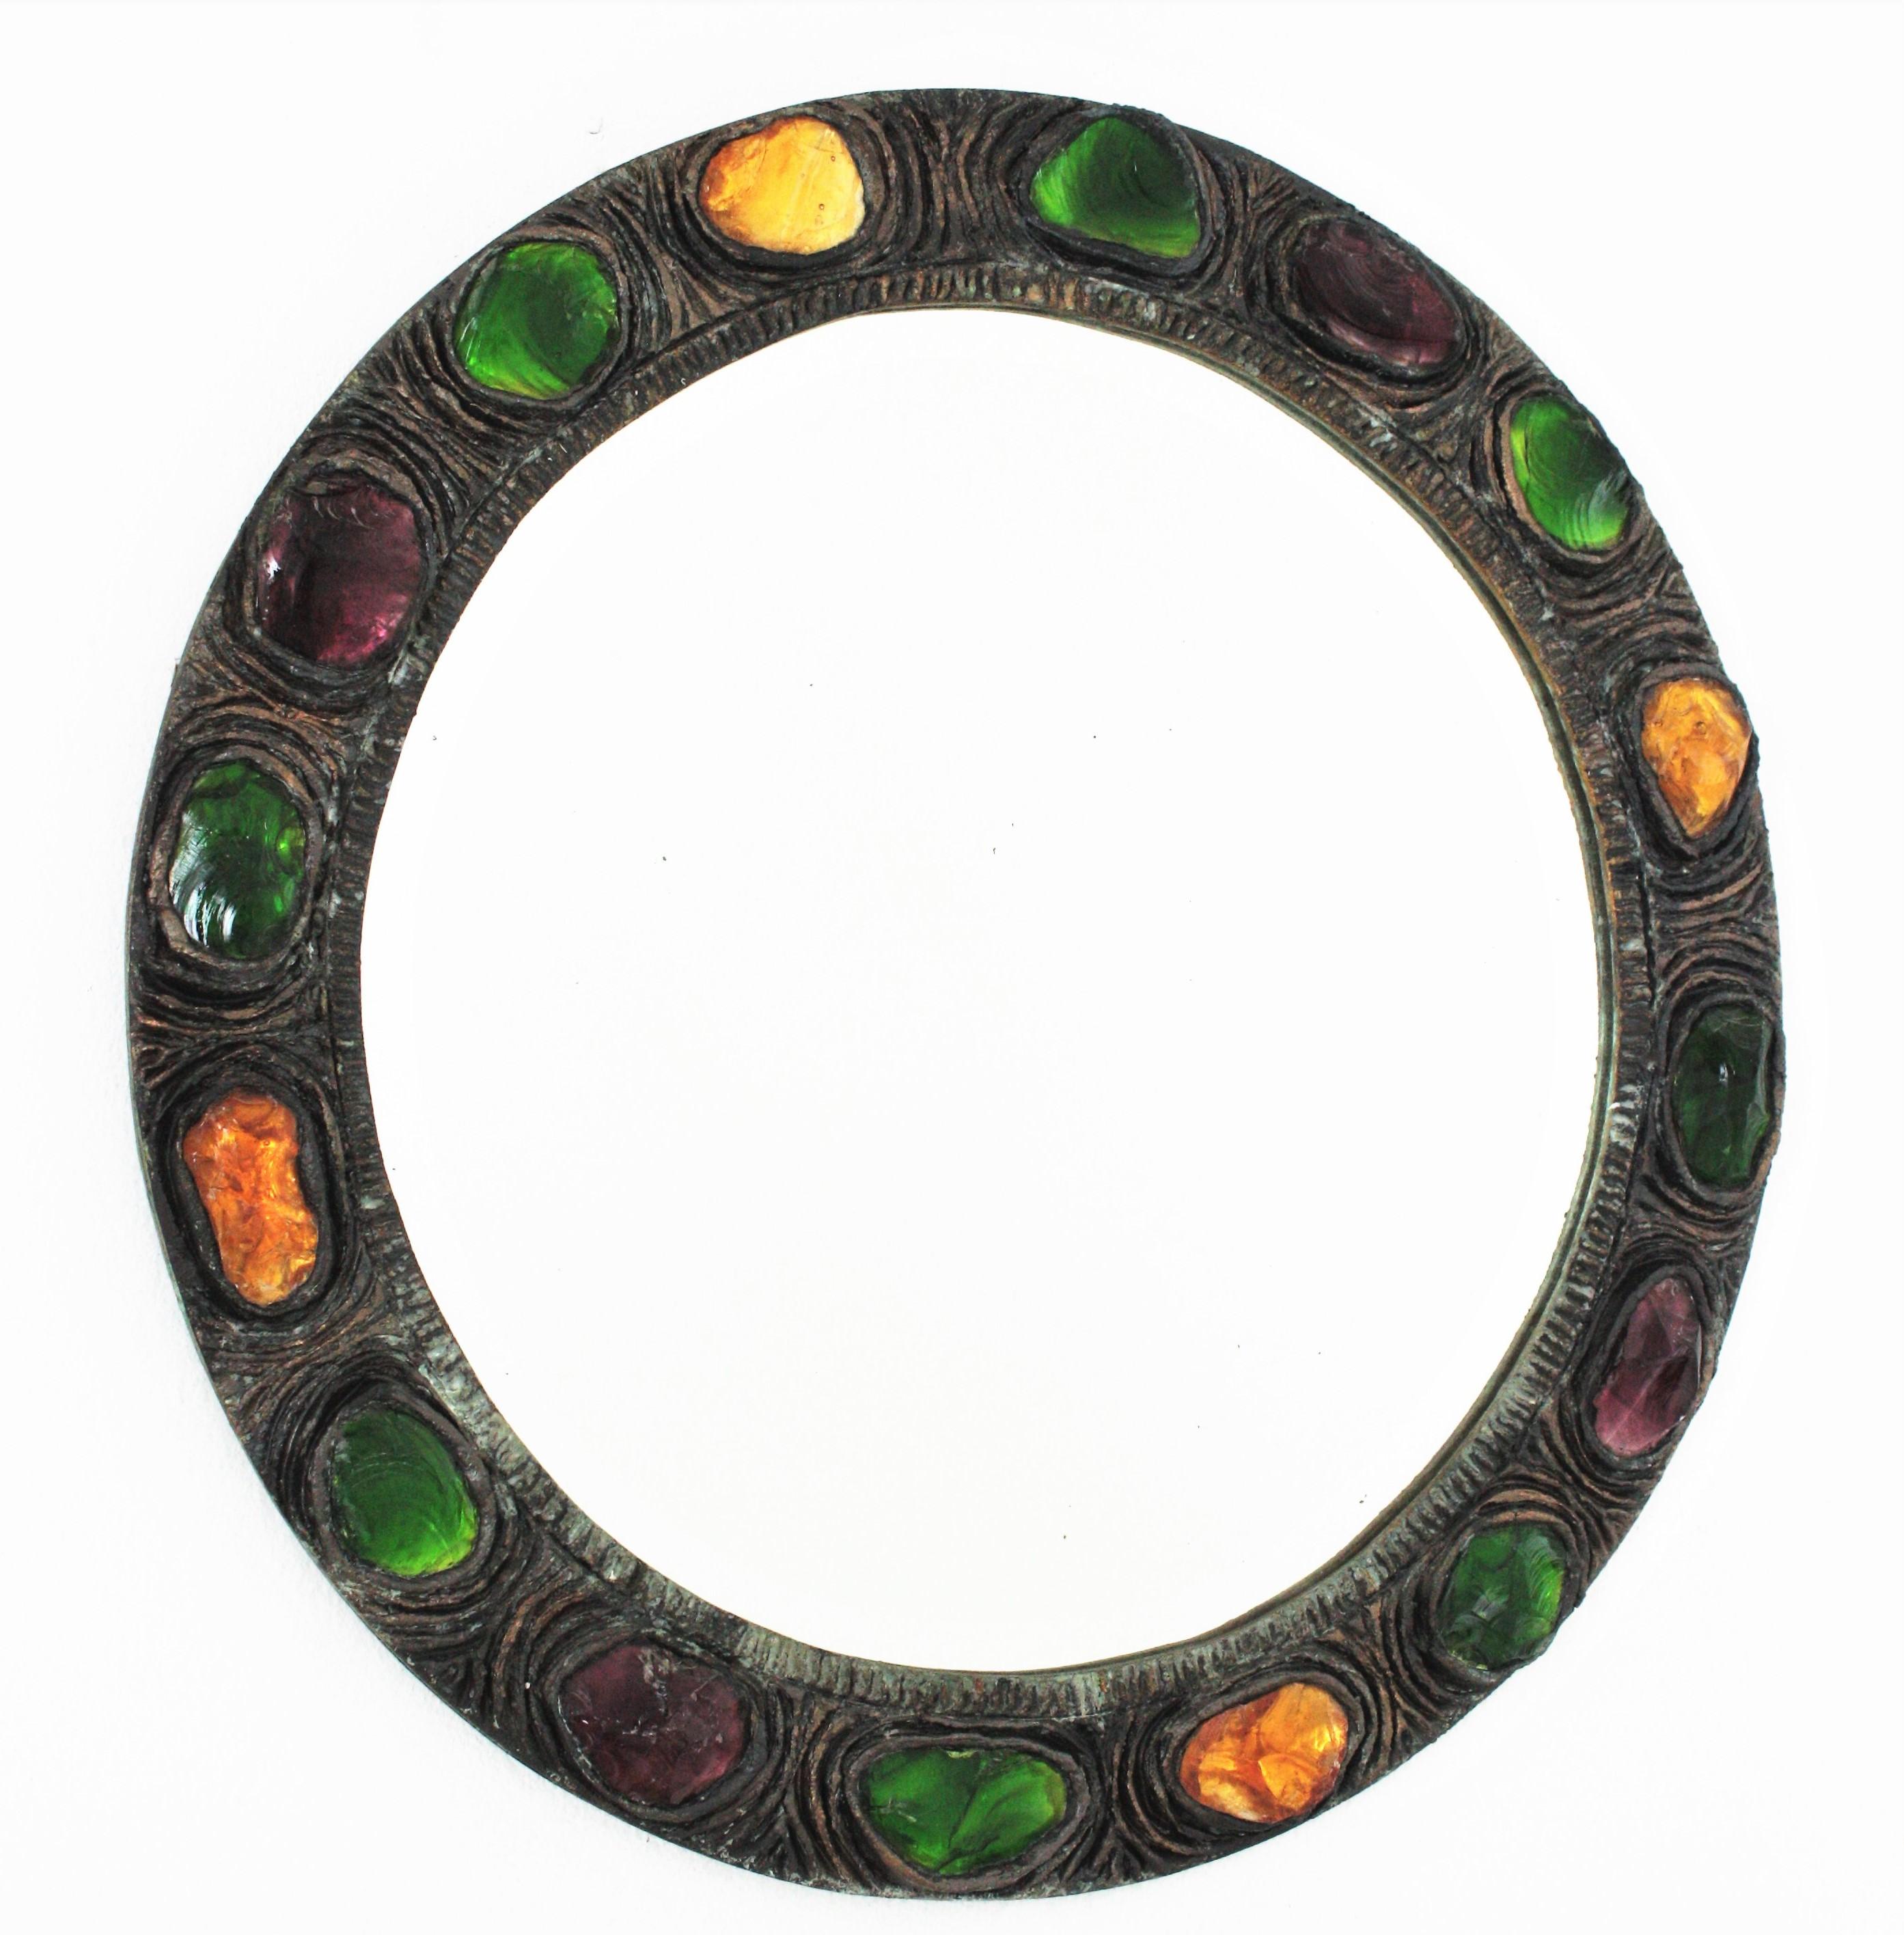 Rare miroir circulaire de style moderne du milieu du siècle, fabriqué à la main en stuc et orné de cristaux de roche verts, jaunes, orange et violets. Espagne, années 1960.
Magnifique cadre composé de morceaux de cristaux de roche colorés et d'une